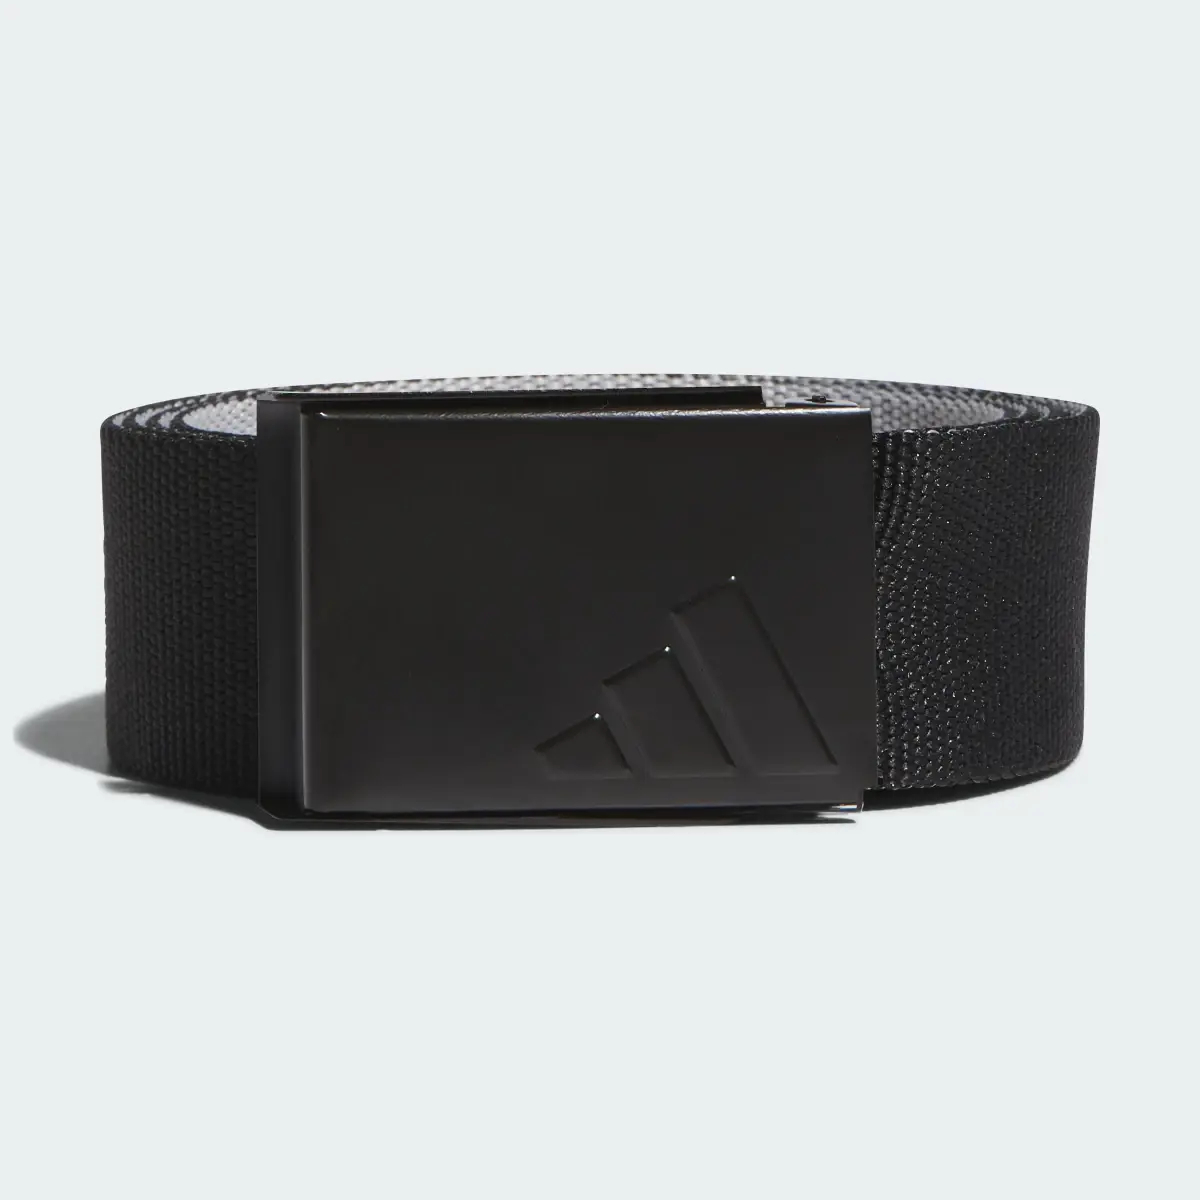 Adidas Cintura Reversible Webbing. 2